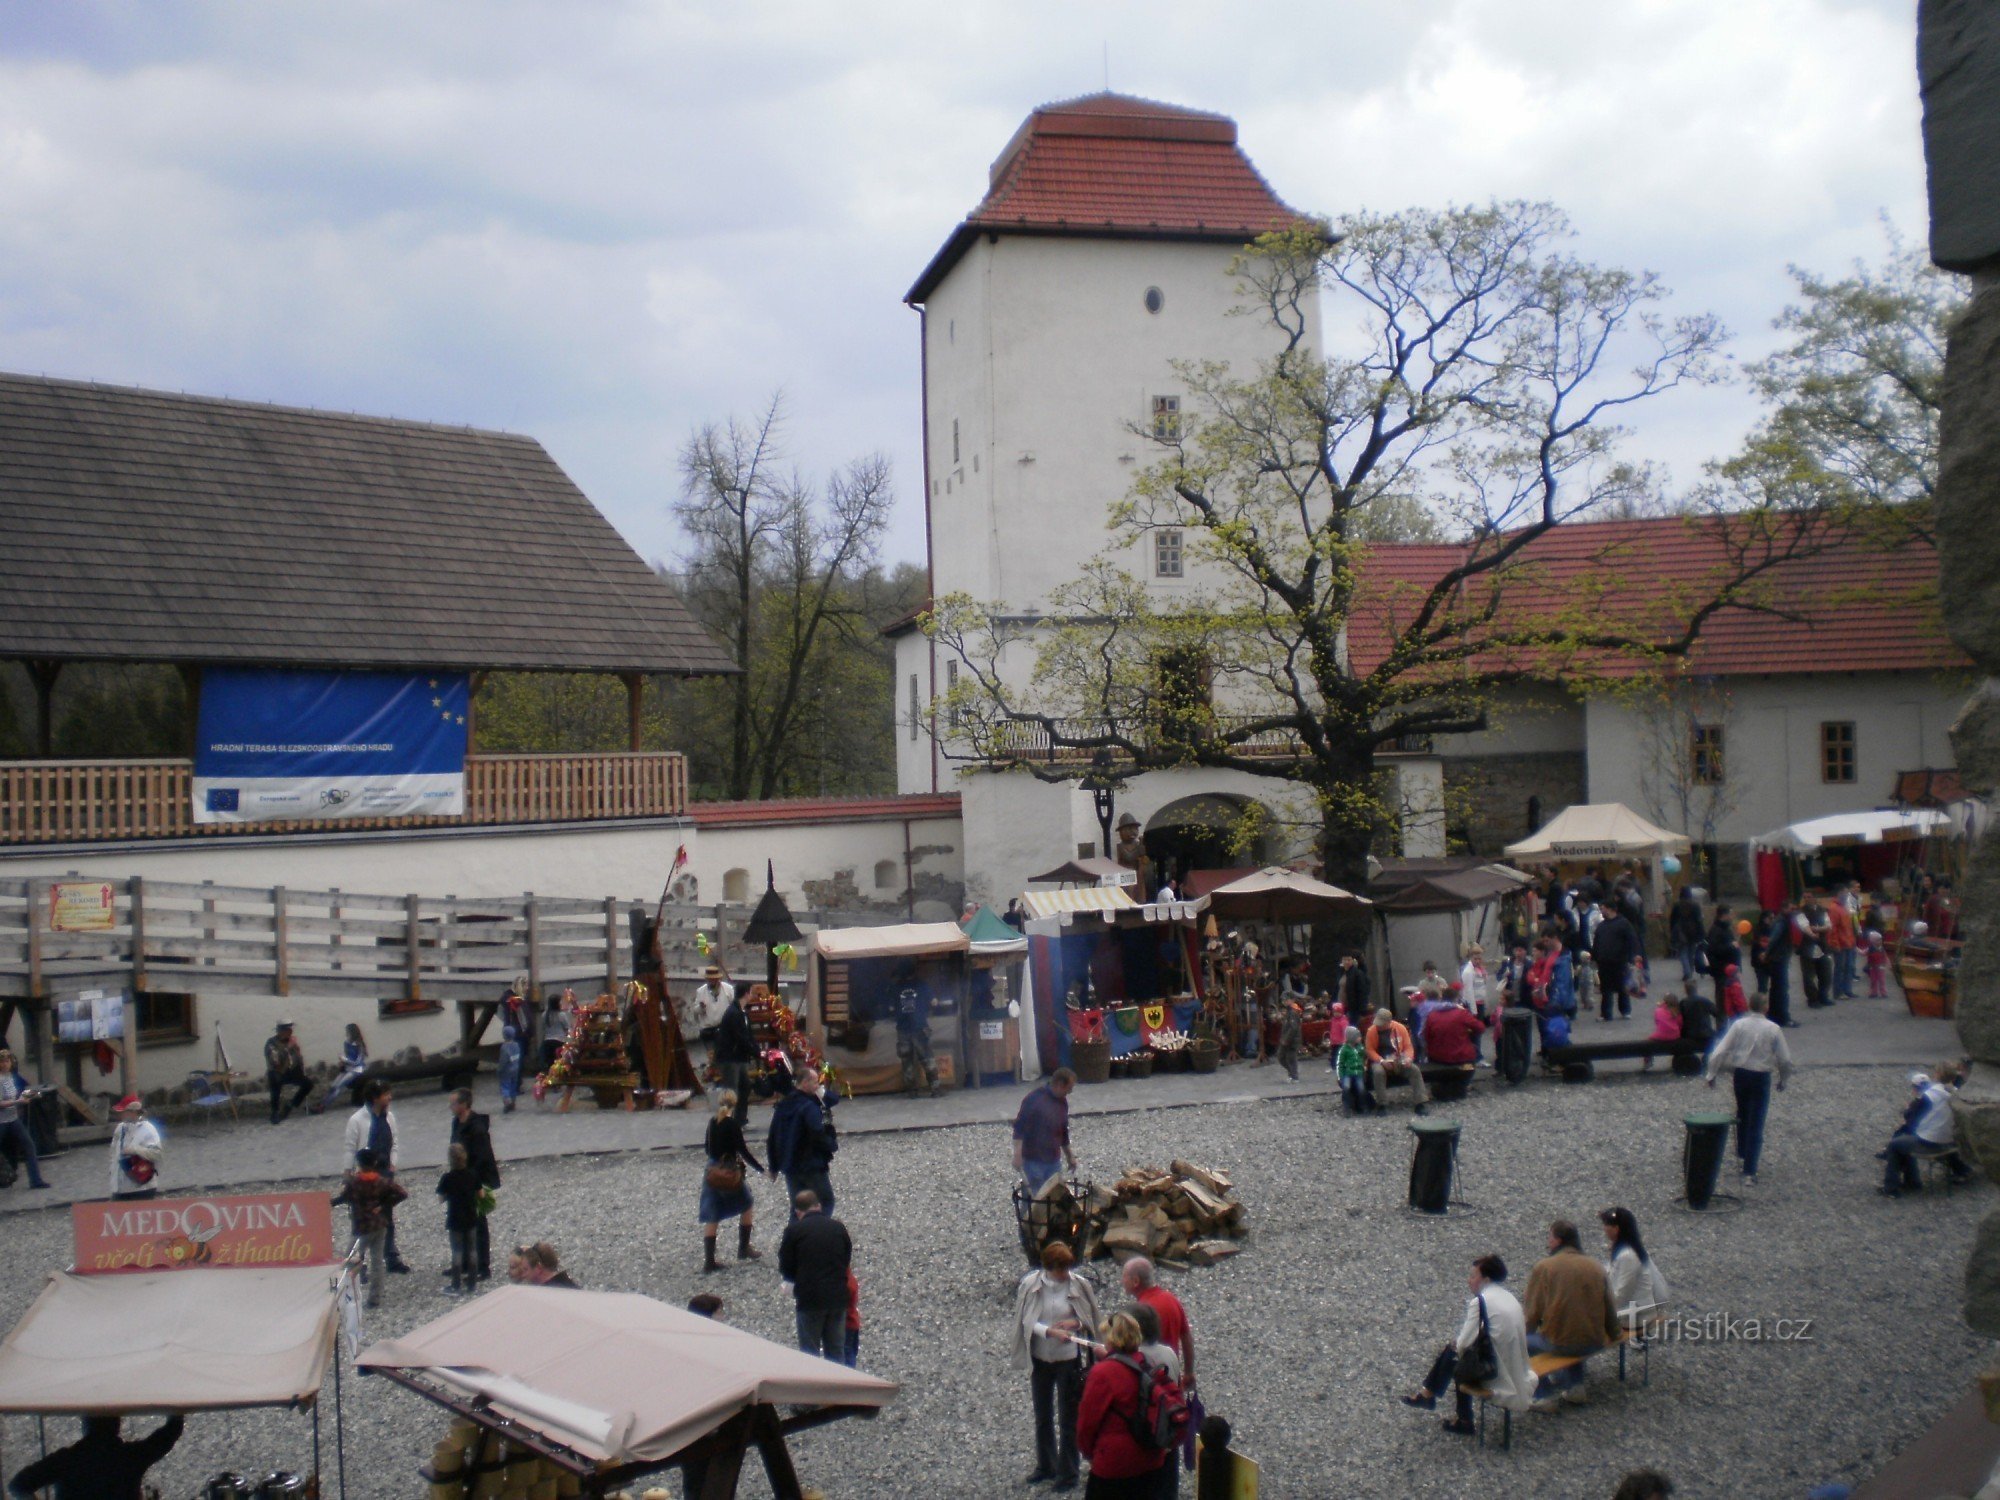 Velikonoce na Slezskoostravském hradě (c) Tiziana